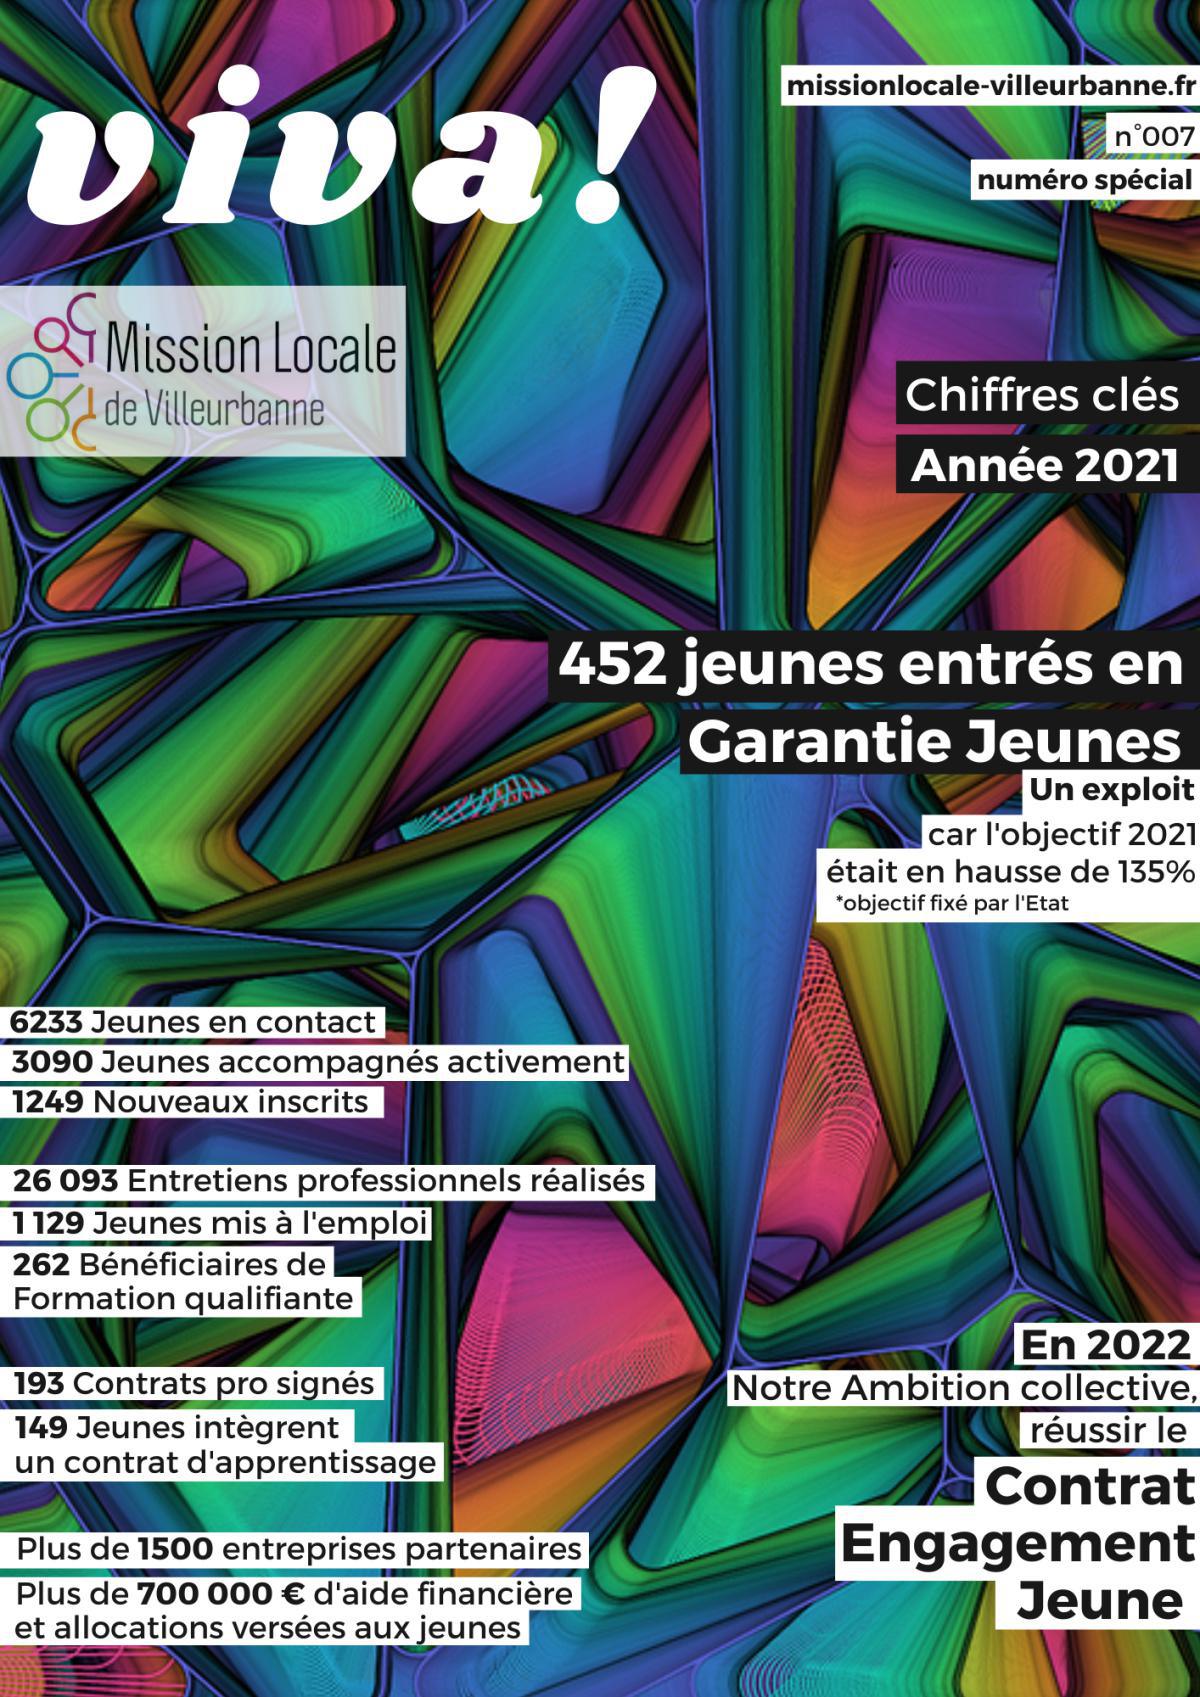 Les Chiffres clés 2021 de la Mission Locale de Villeurbanne 